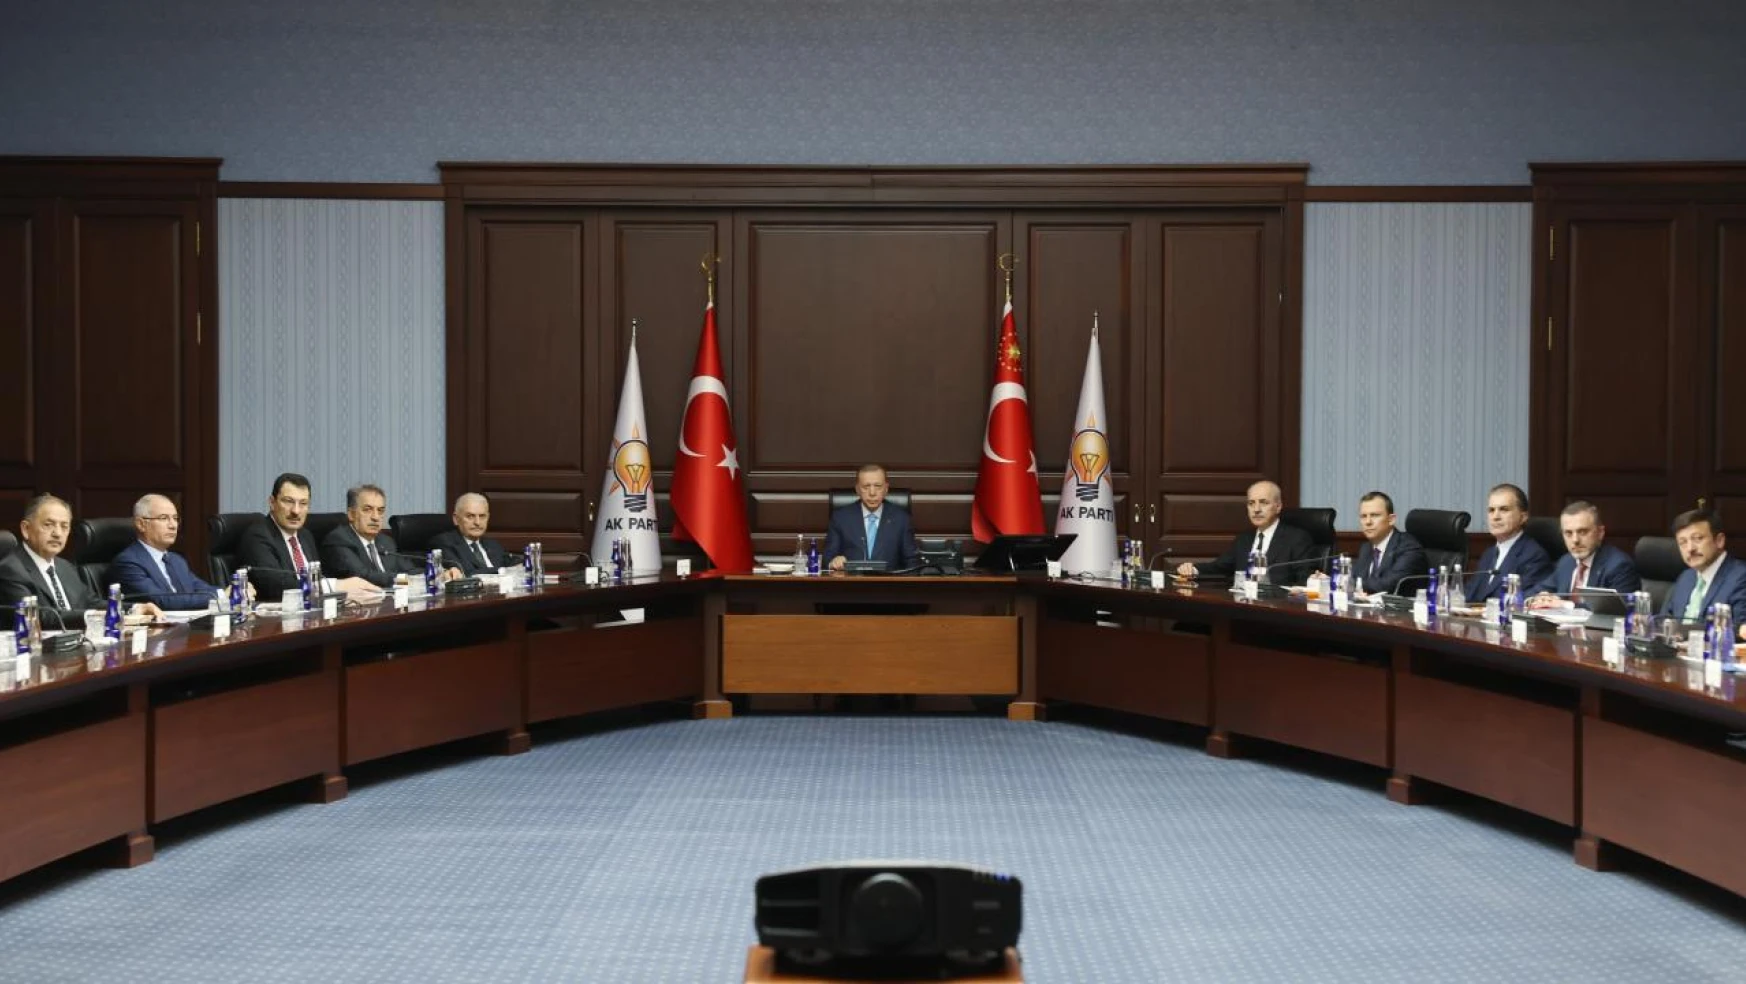 AK Parti MYK Cumhurbaşkanı ve AK Parti Genel Başkanı Recep Tayyip Erdoğan başkanlığında toplandı.